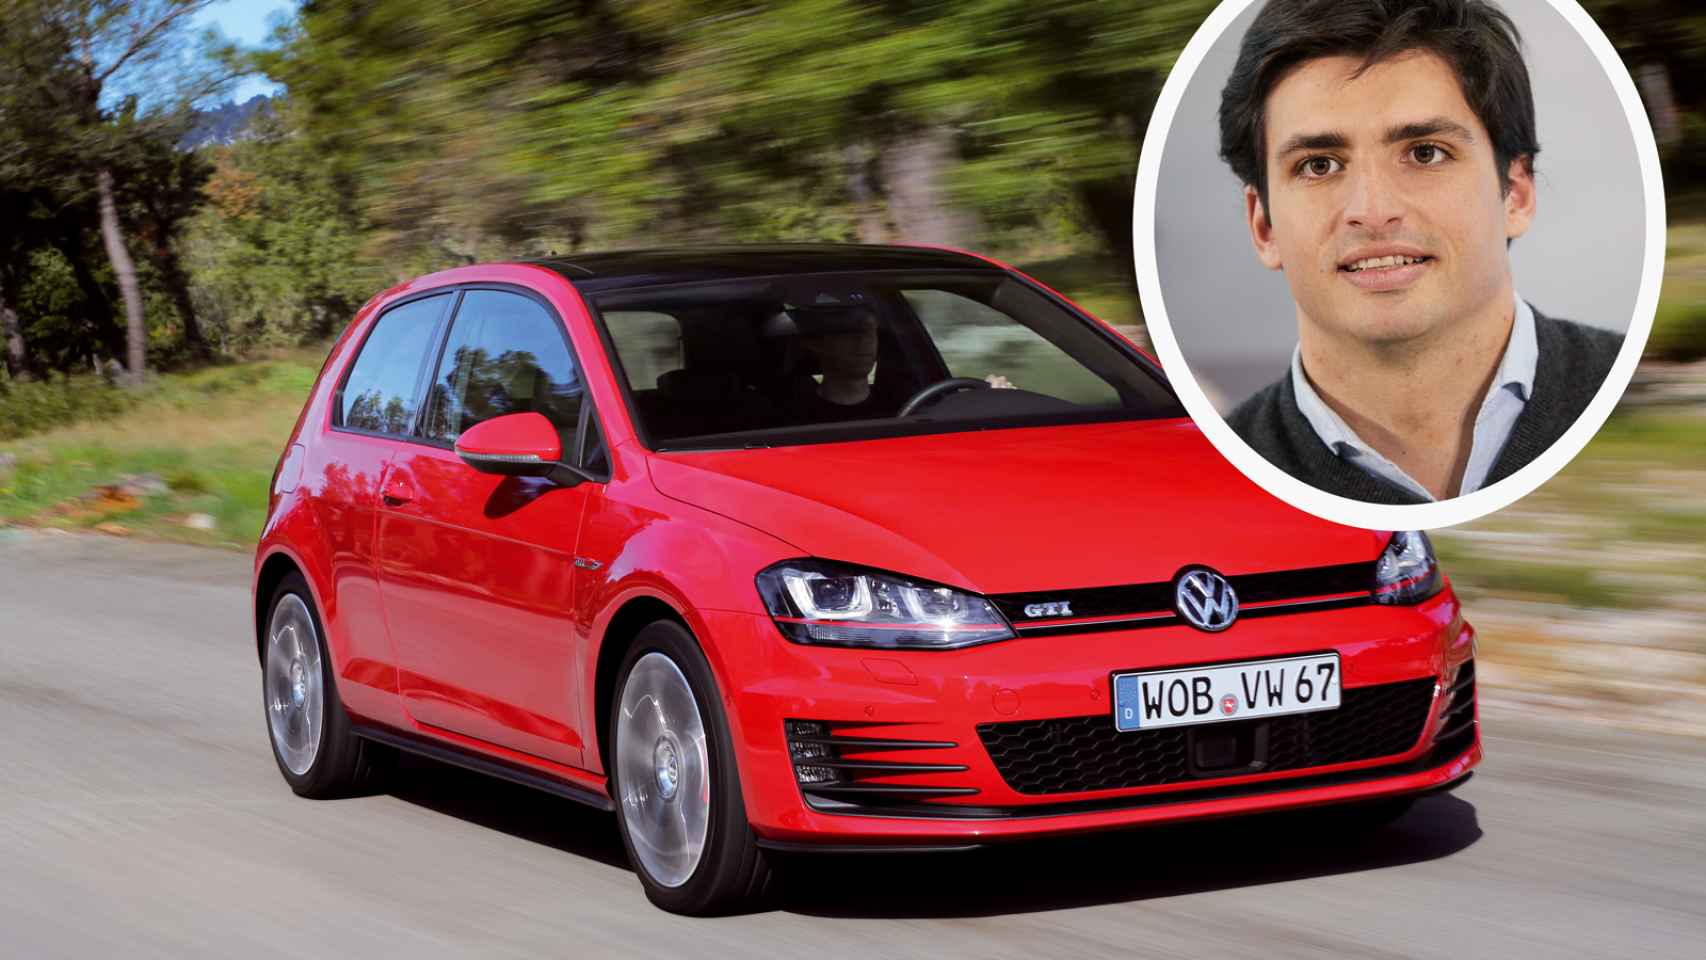 Los coches de ‘calle’ de Carlos Sainz: del Volkswagen Golf y el Renault Mégane a los Ferrari más potentes